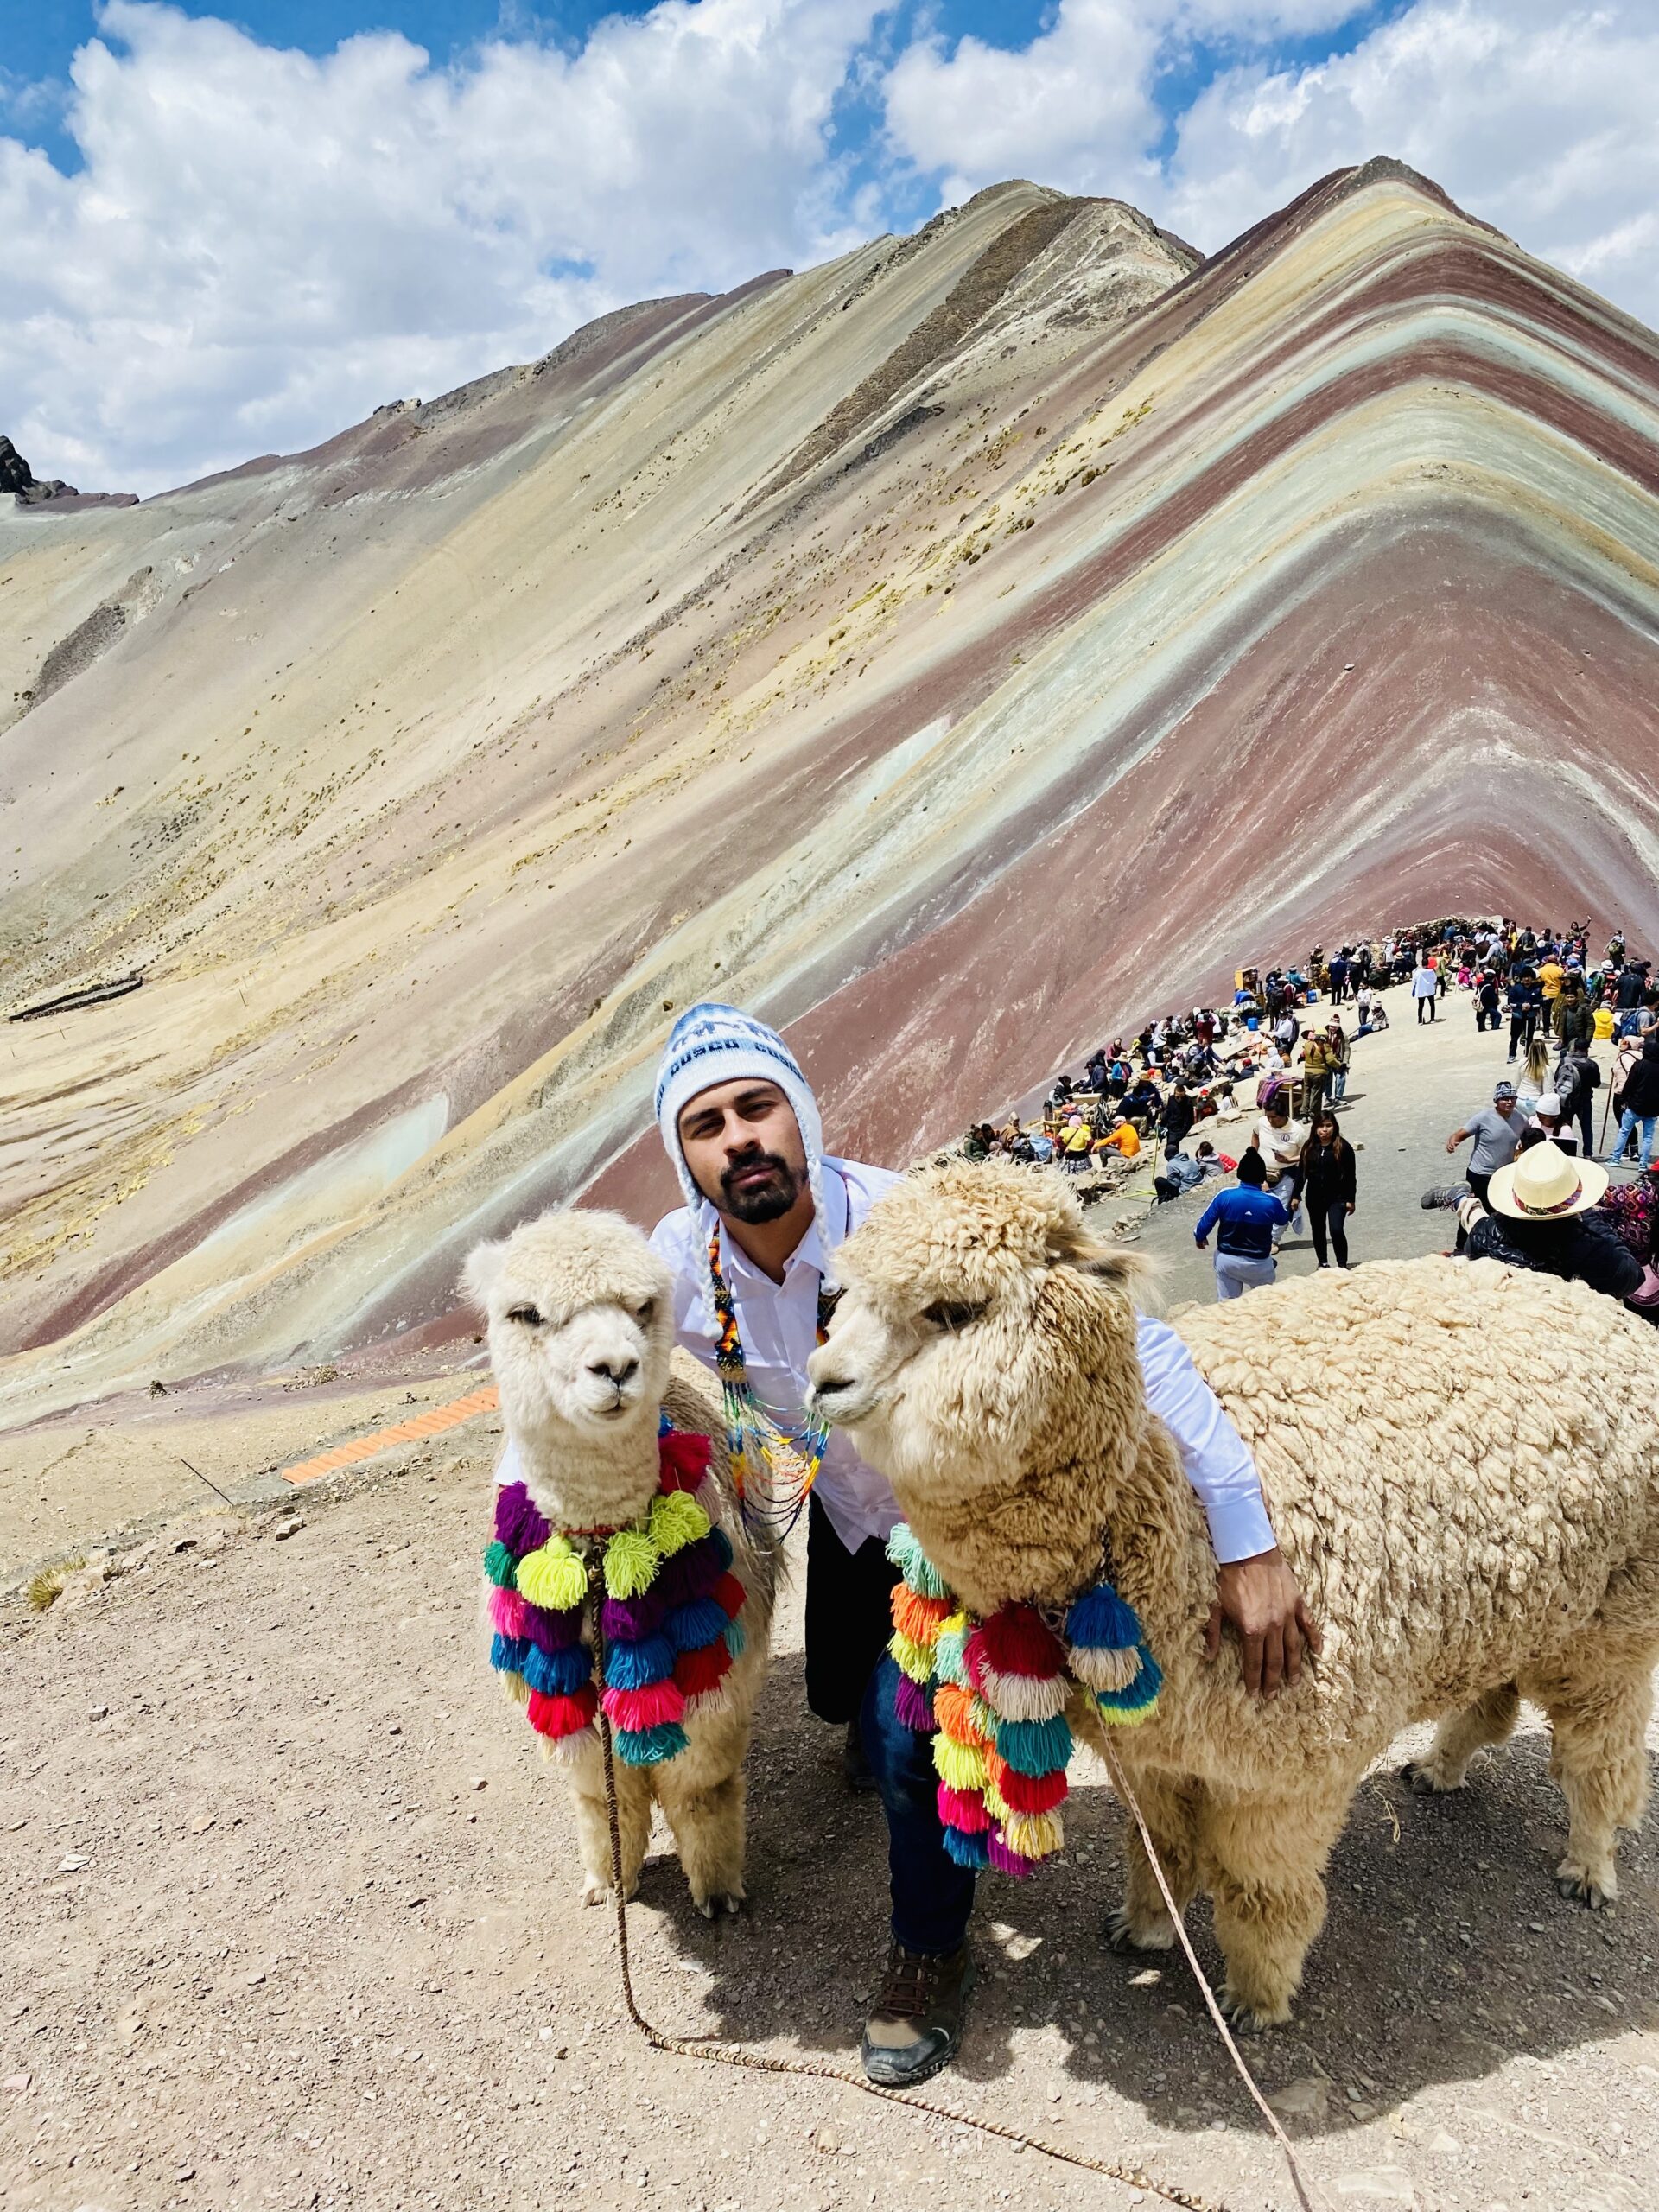 Montaña de Colores or Rainbow Mountain in Peru (Photo Credit: Juan David Borja)